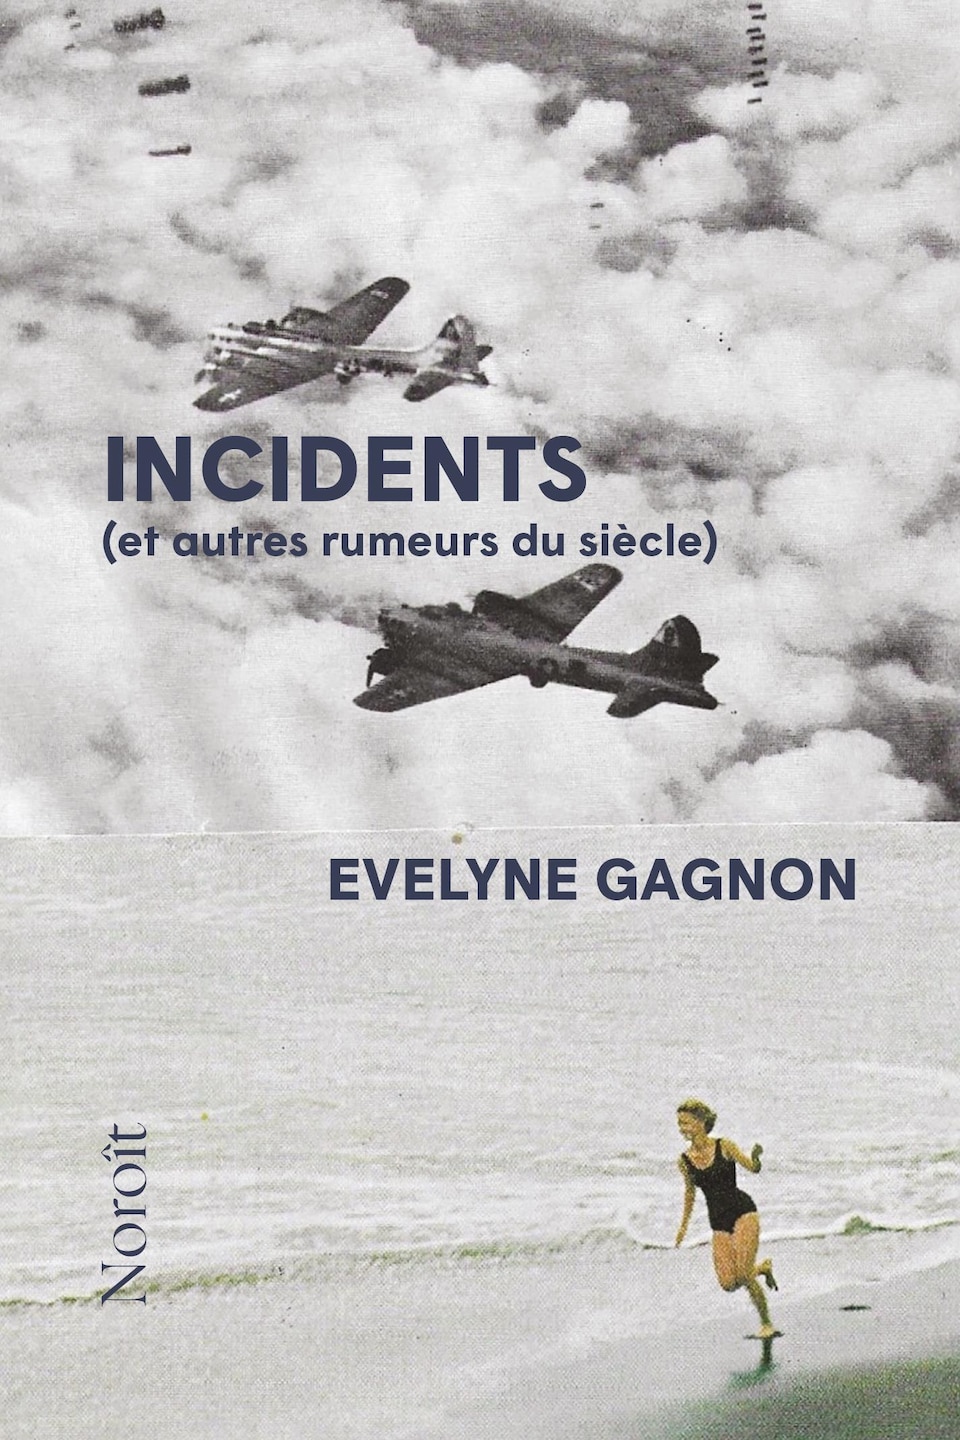 Couverture du livre Incidents (et autres rumeurs du siècle).